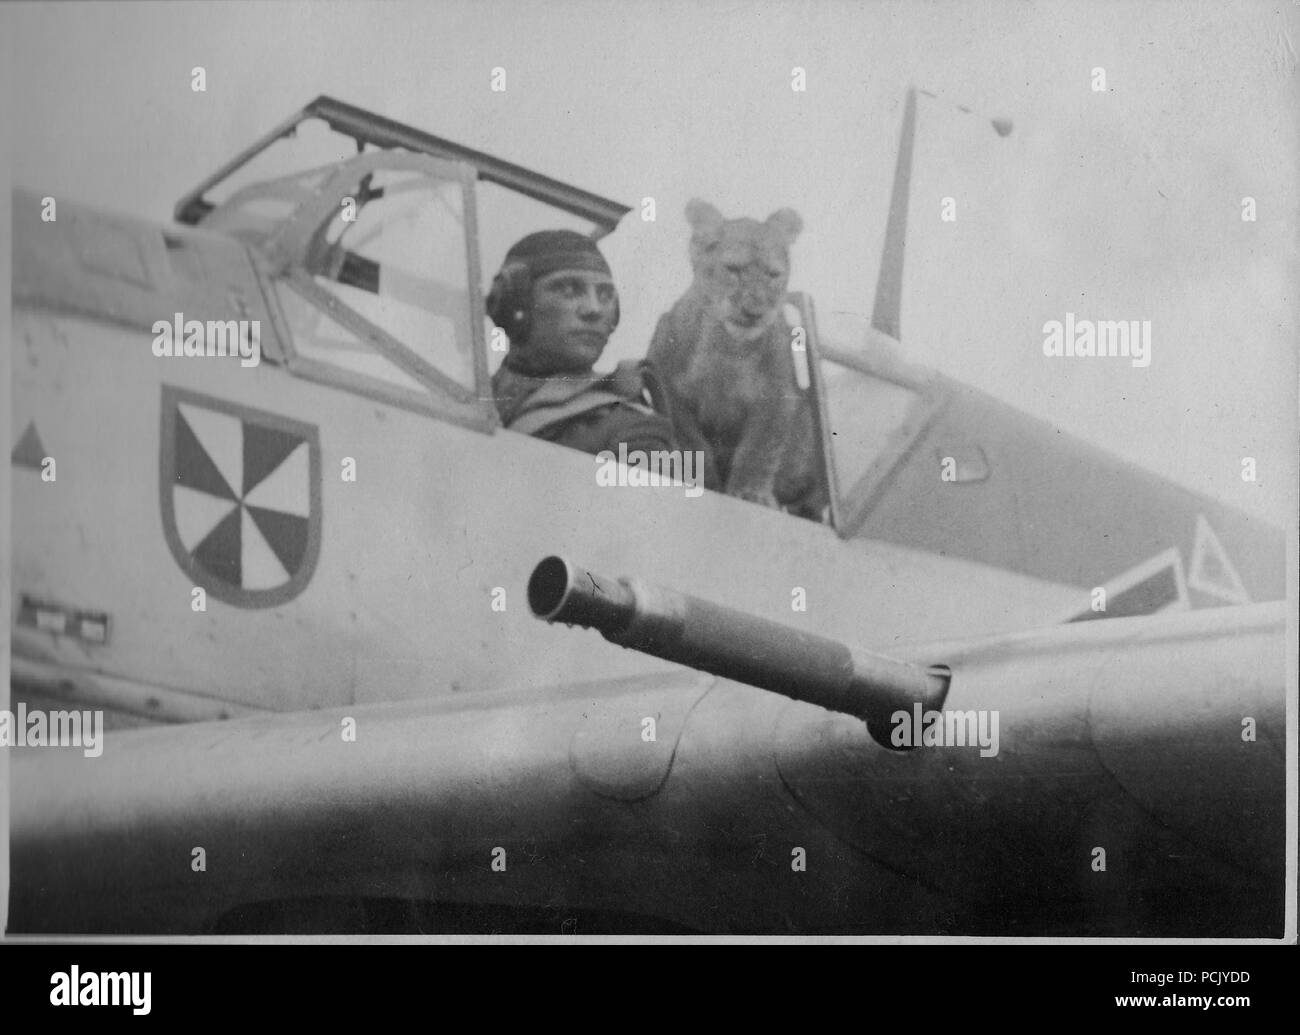 Immagine da un album di foto relative a II. Gruppe, Jagdgeschwader 3: Oberleutnant Franz von Werra, Gruppen aiutante di II. Gruppe, Jagdgeschwader 3, pone nell'abitacolo della sua BF109E con la II./JG 3 LION CUB mascotte 'Simba', durante l'estate del 1940. Foto Stock